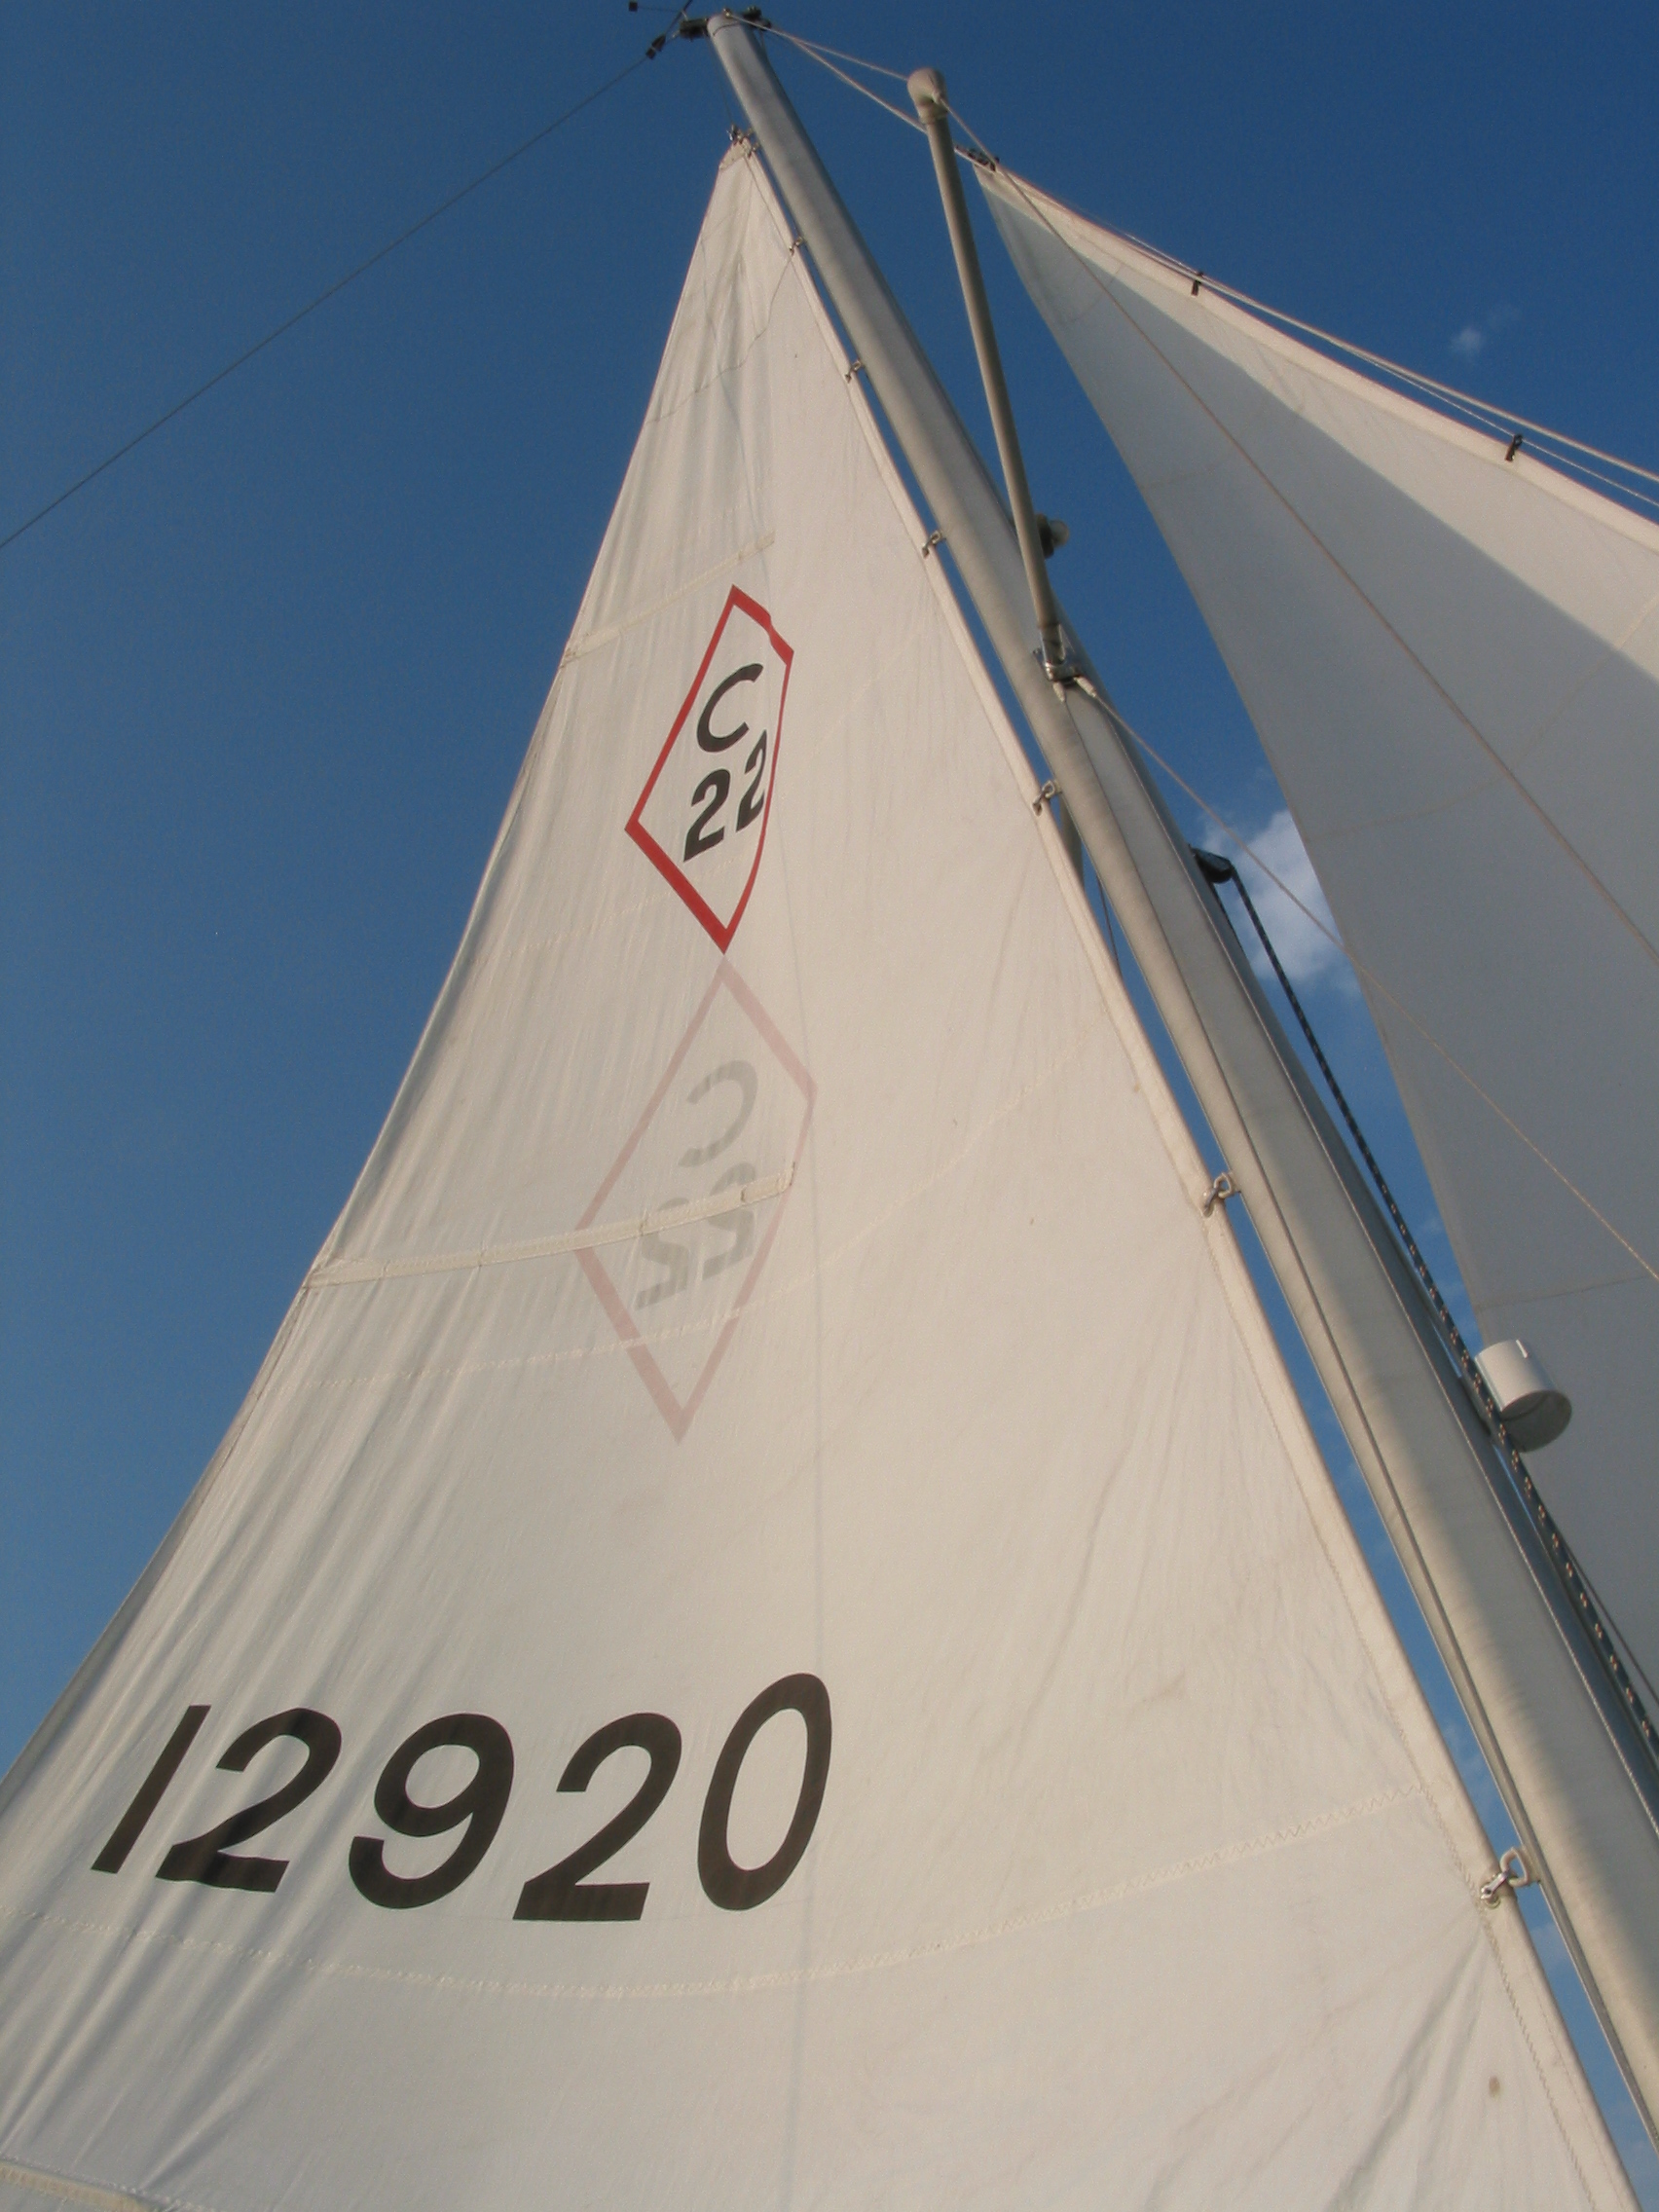 C22 sail